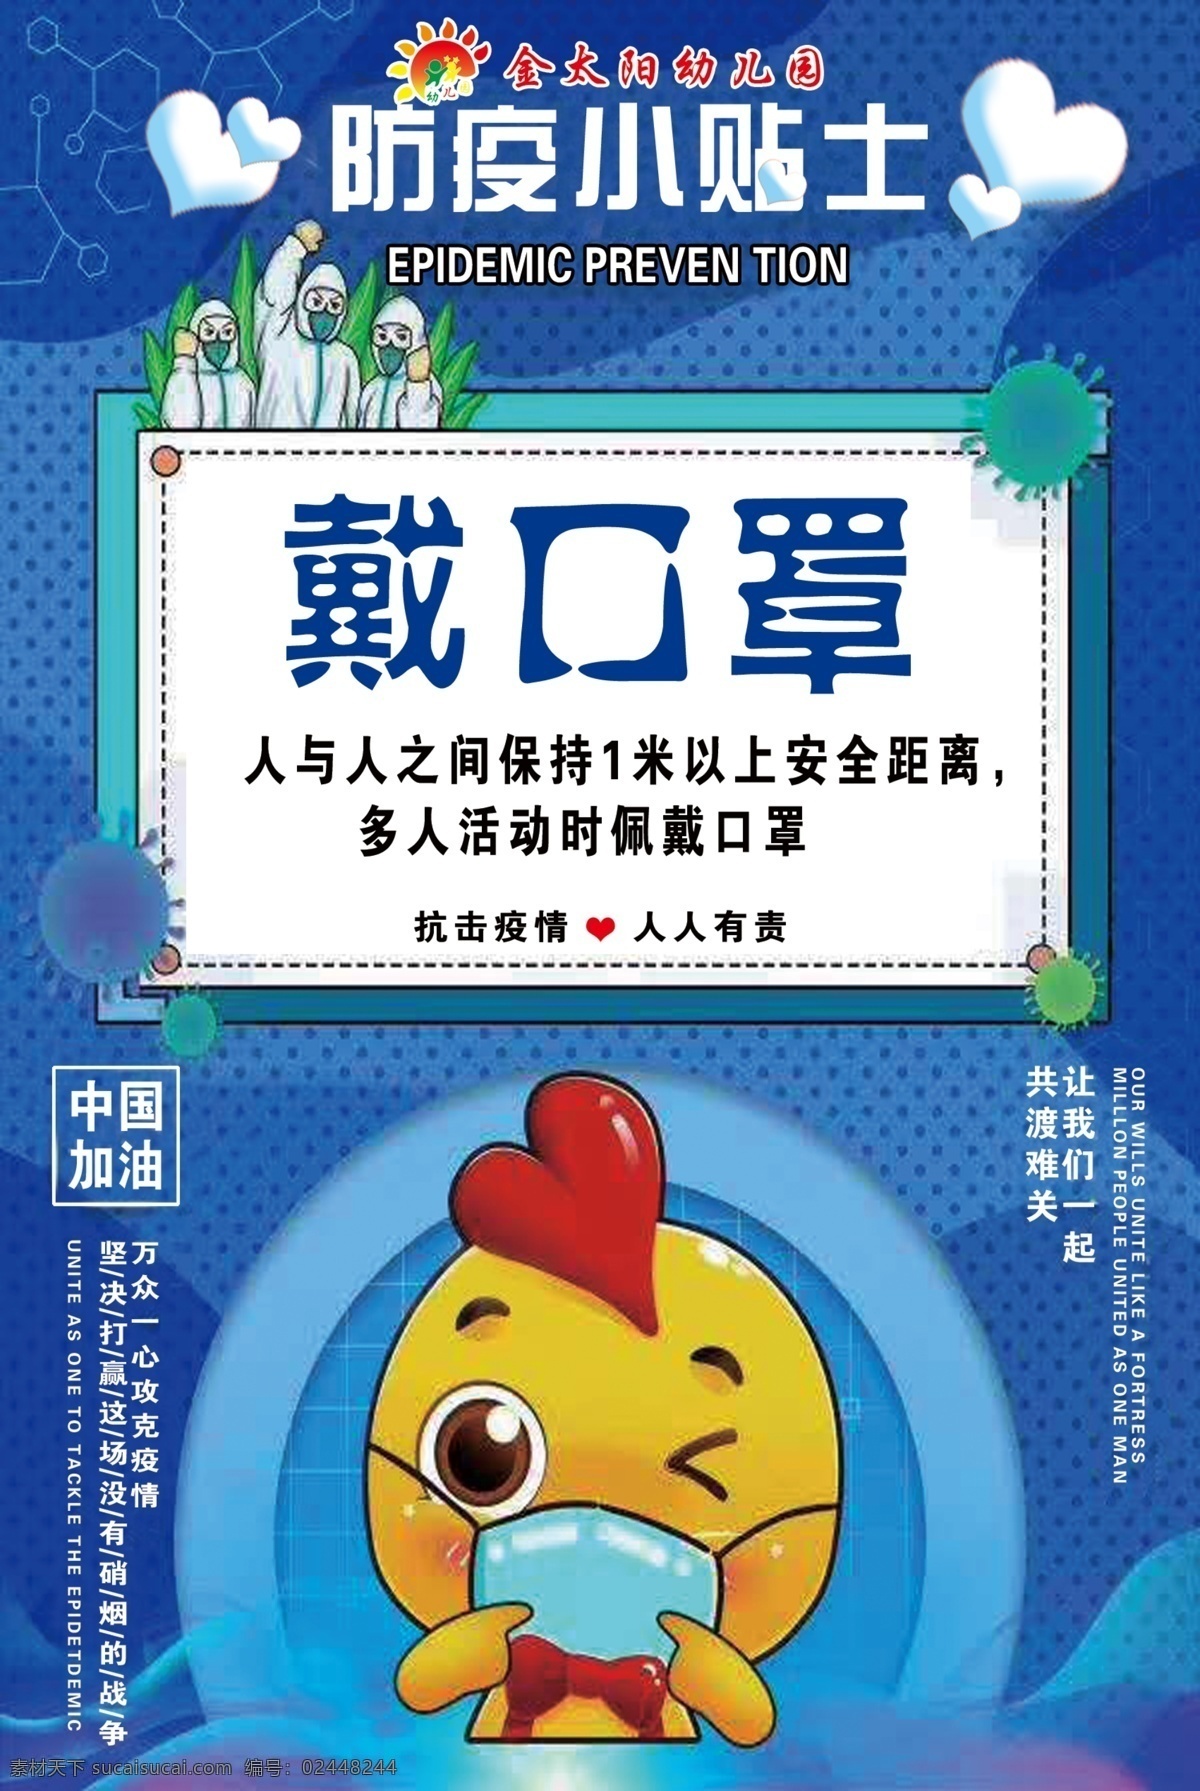 戴口罩 防疫 小贴士 中国加油 幼儿园 展板